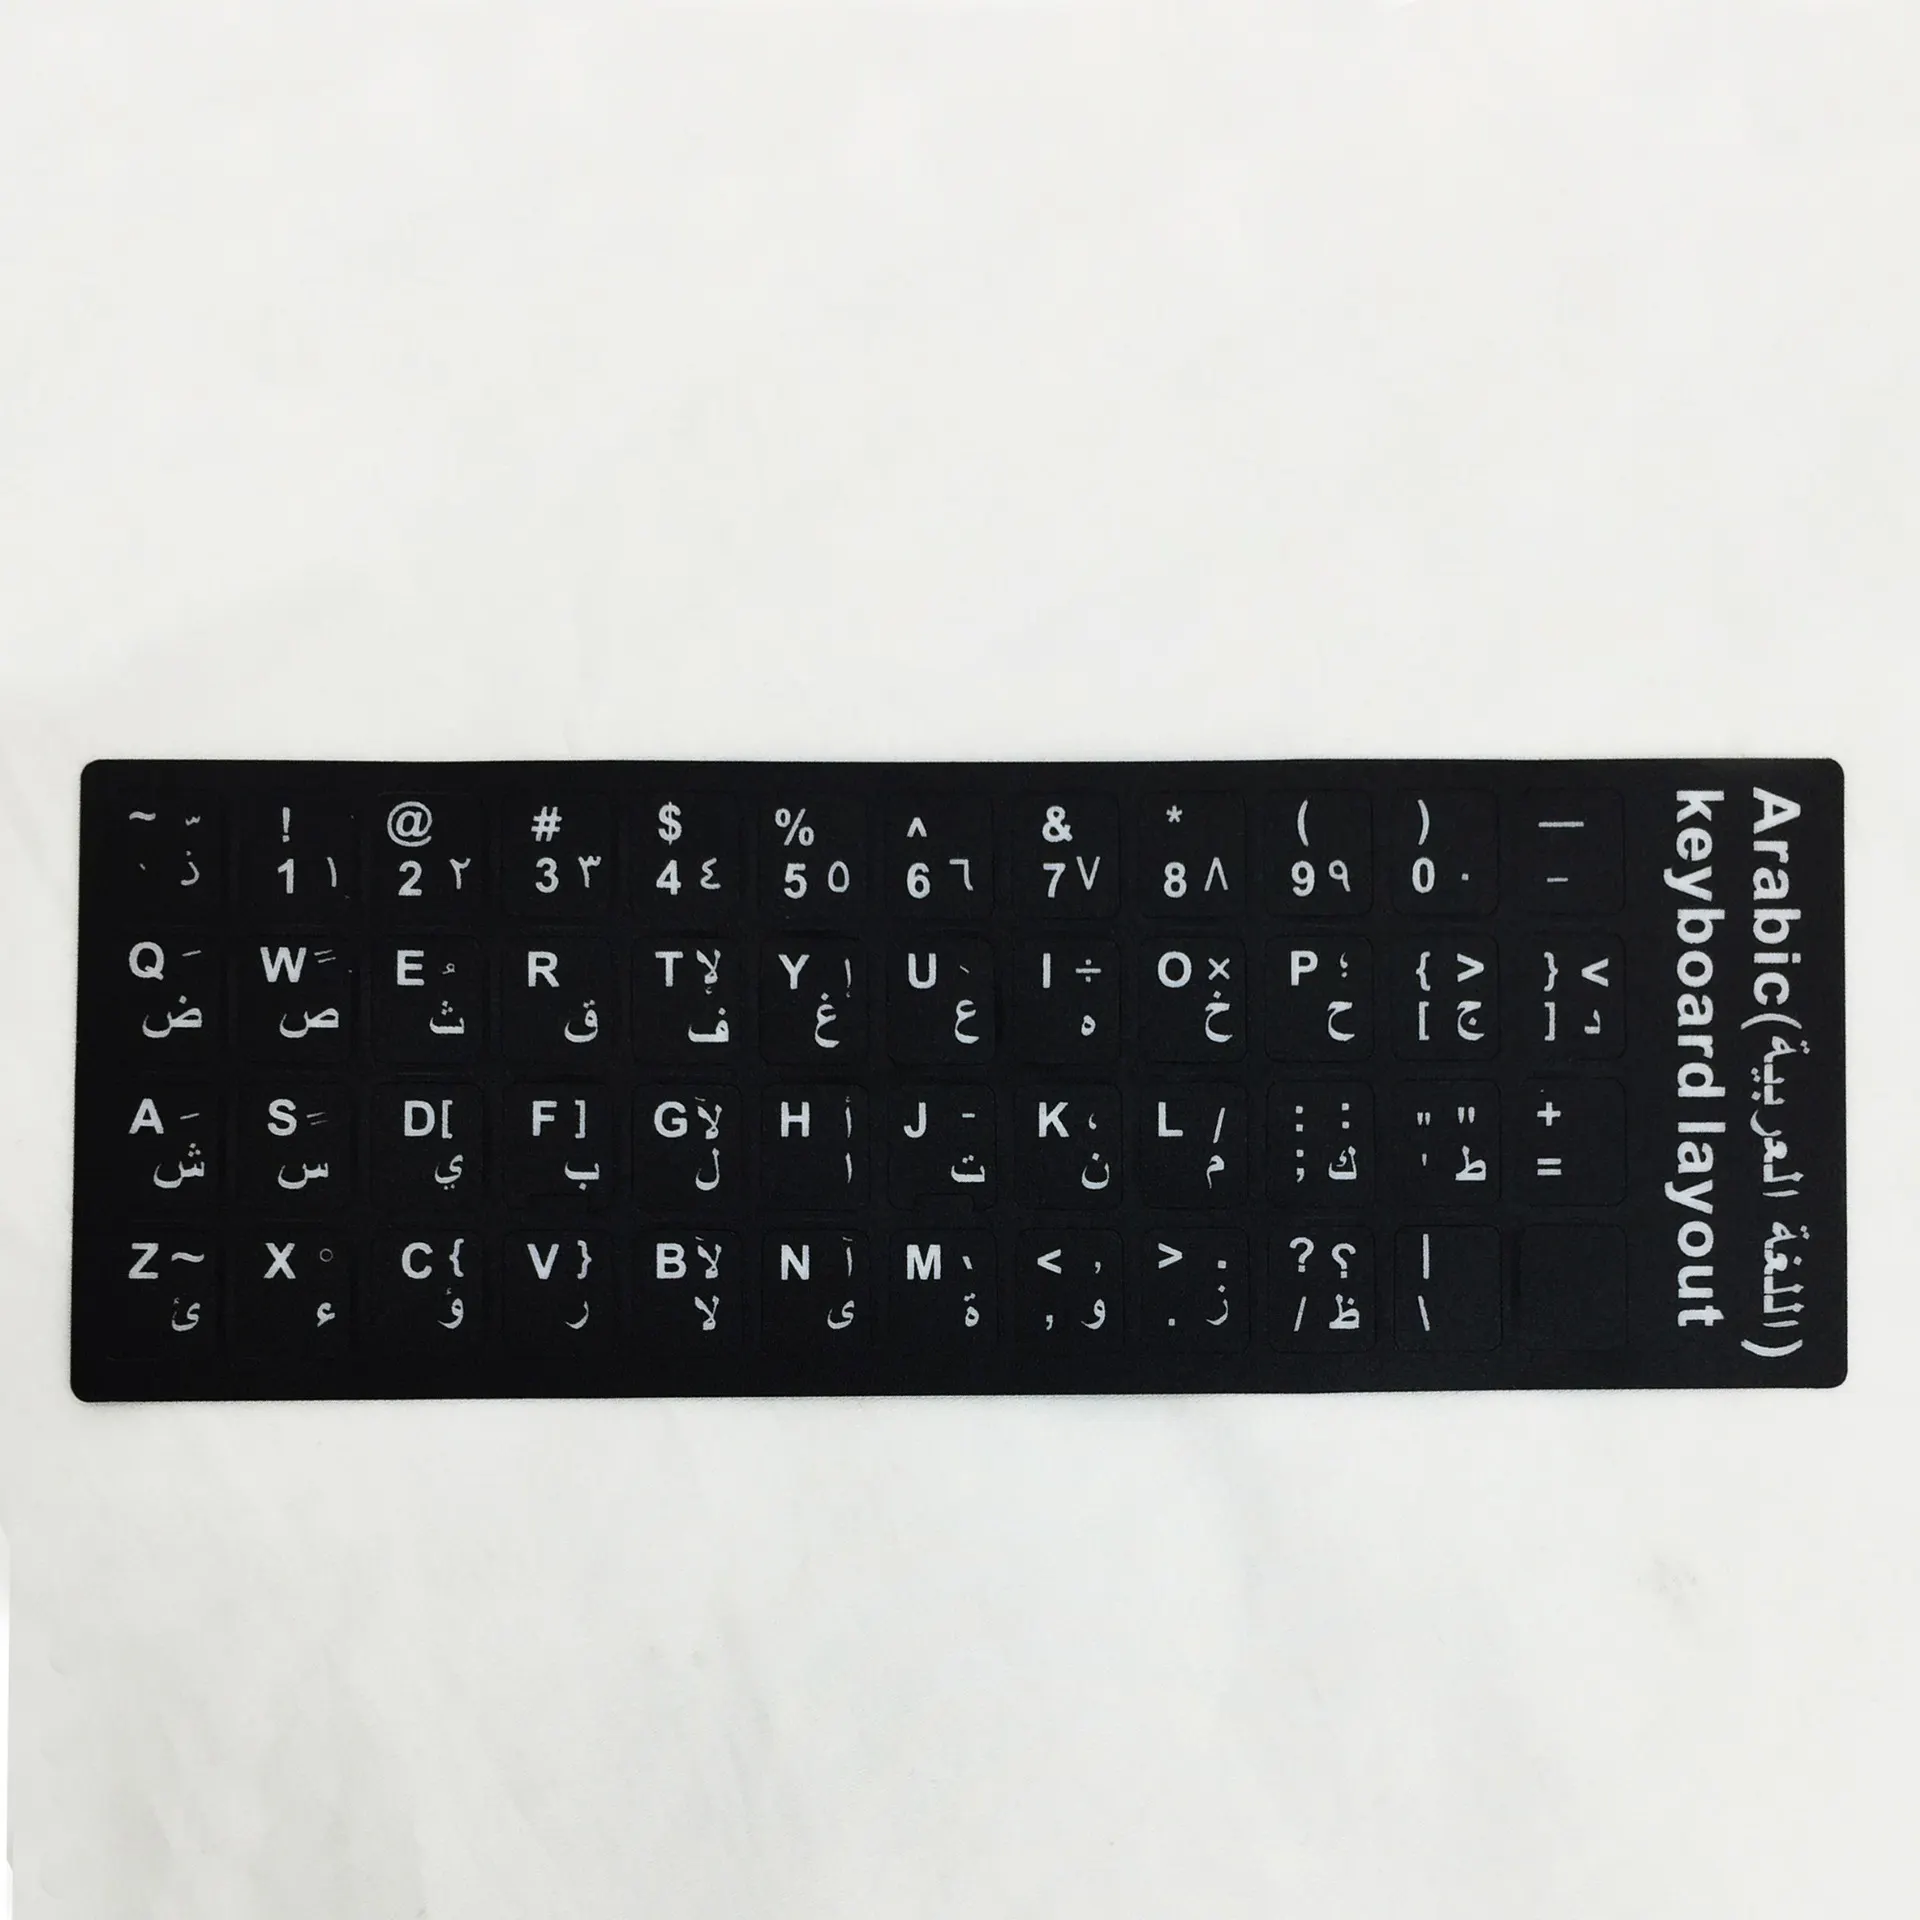 Adesivos para teclado de laptop, adesivos de letras personalizados para teclado, teclado francês e espanhol